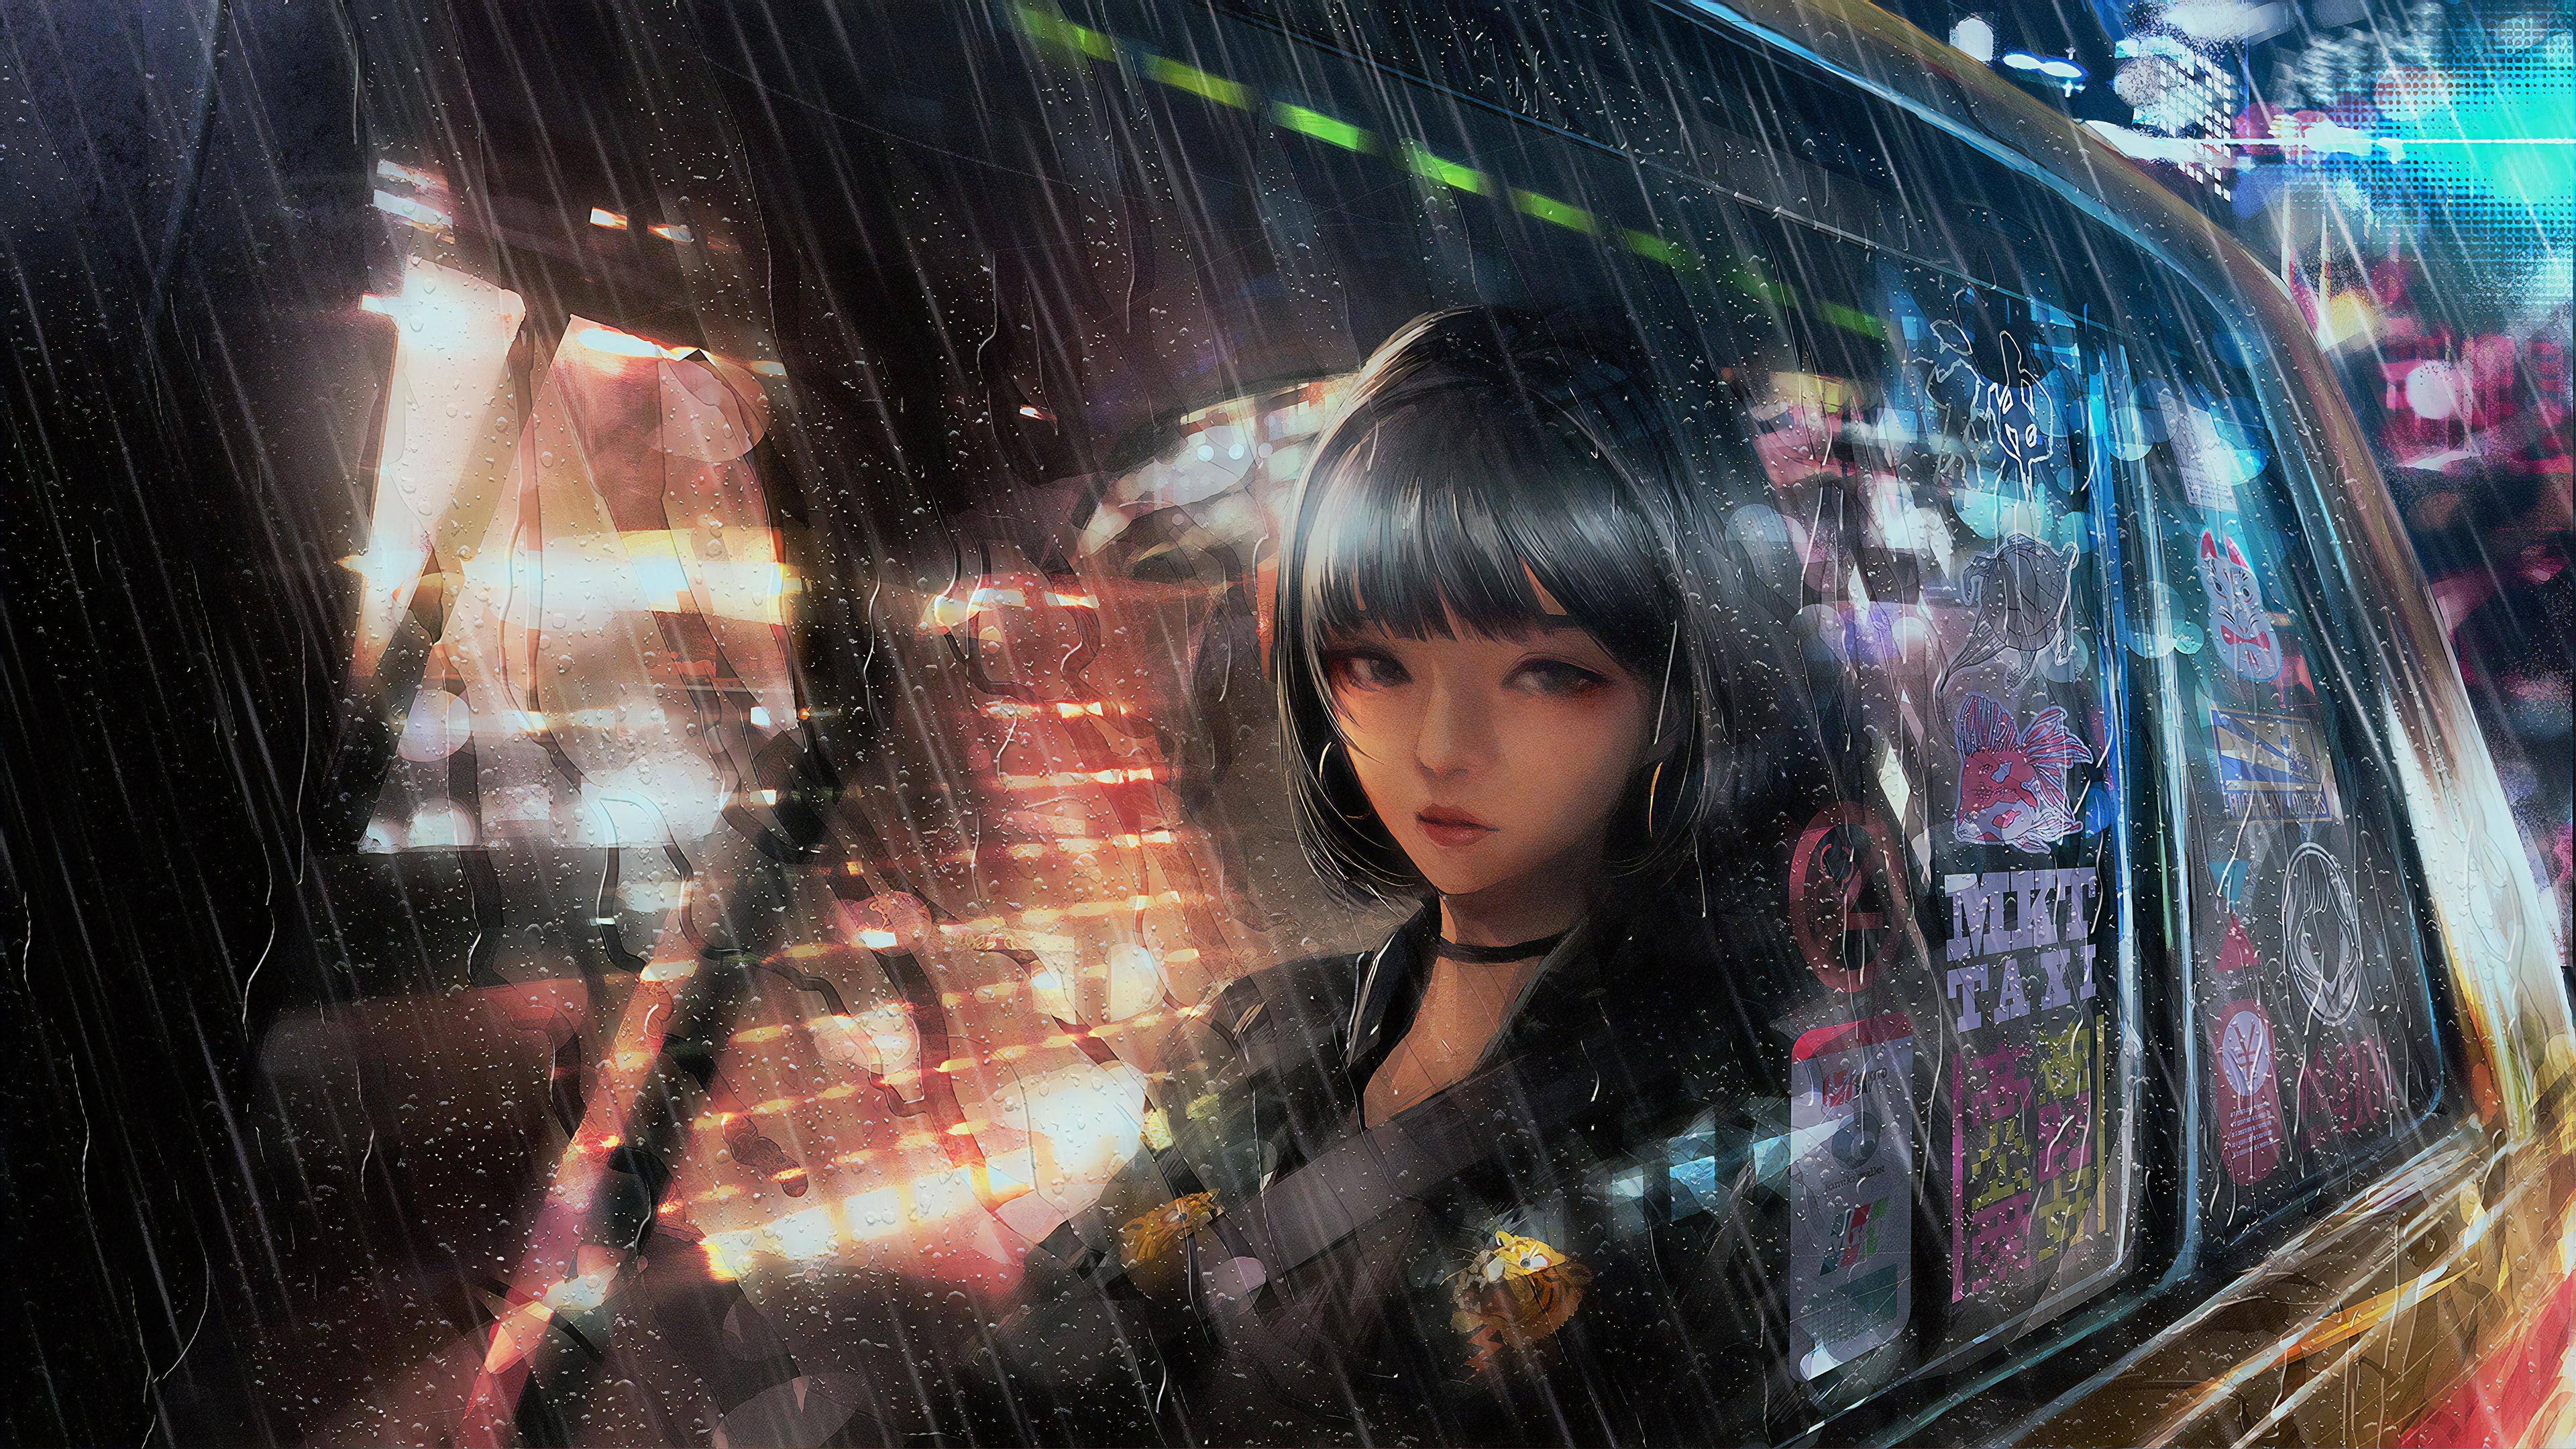 Wallpaper 4k Anime Girl In Taxi Raining 4k Wallpaper, Alone